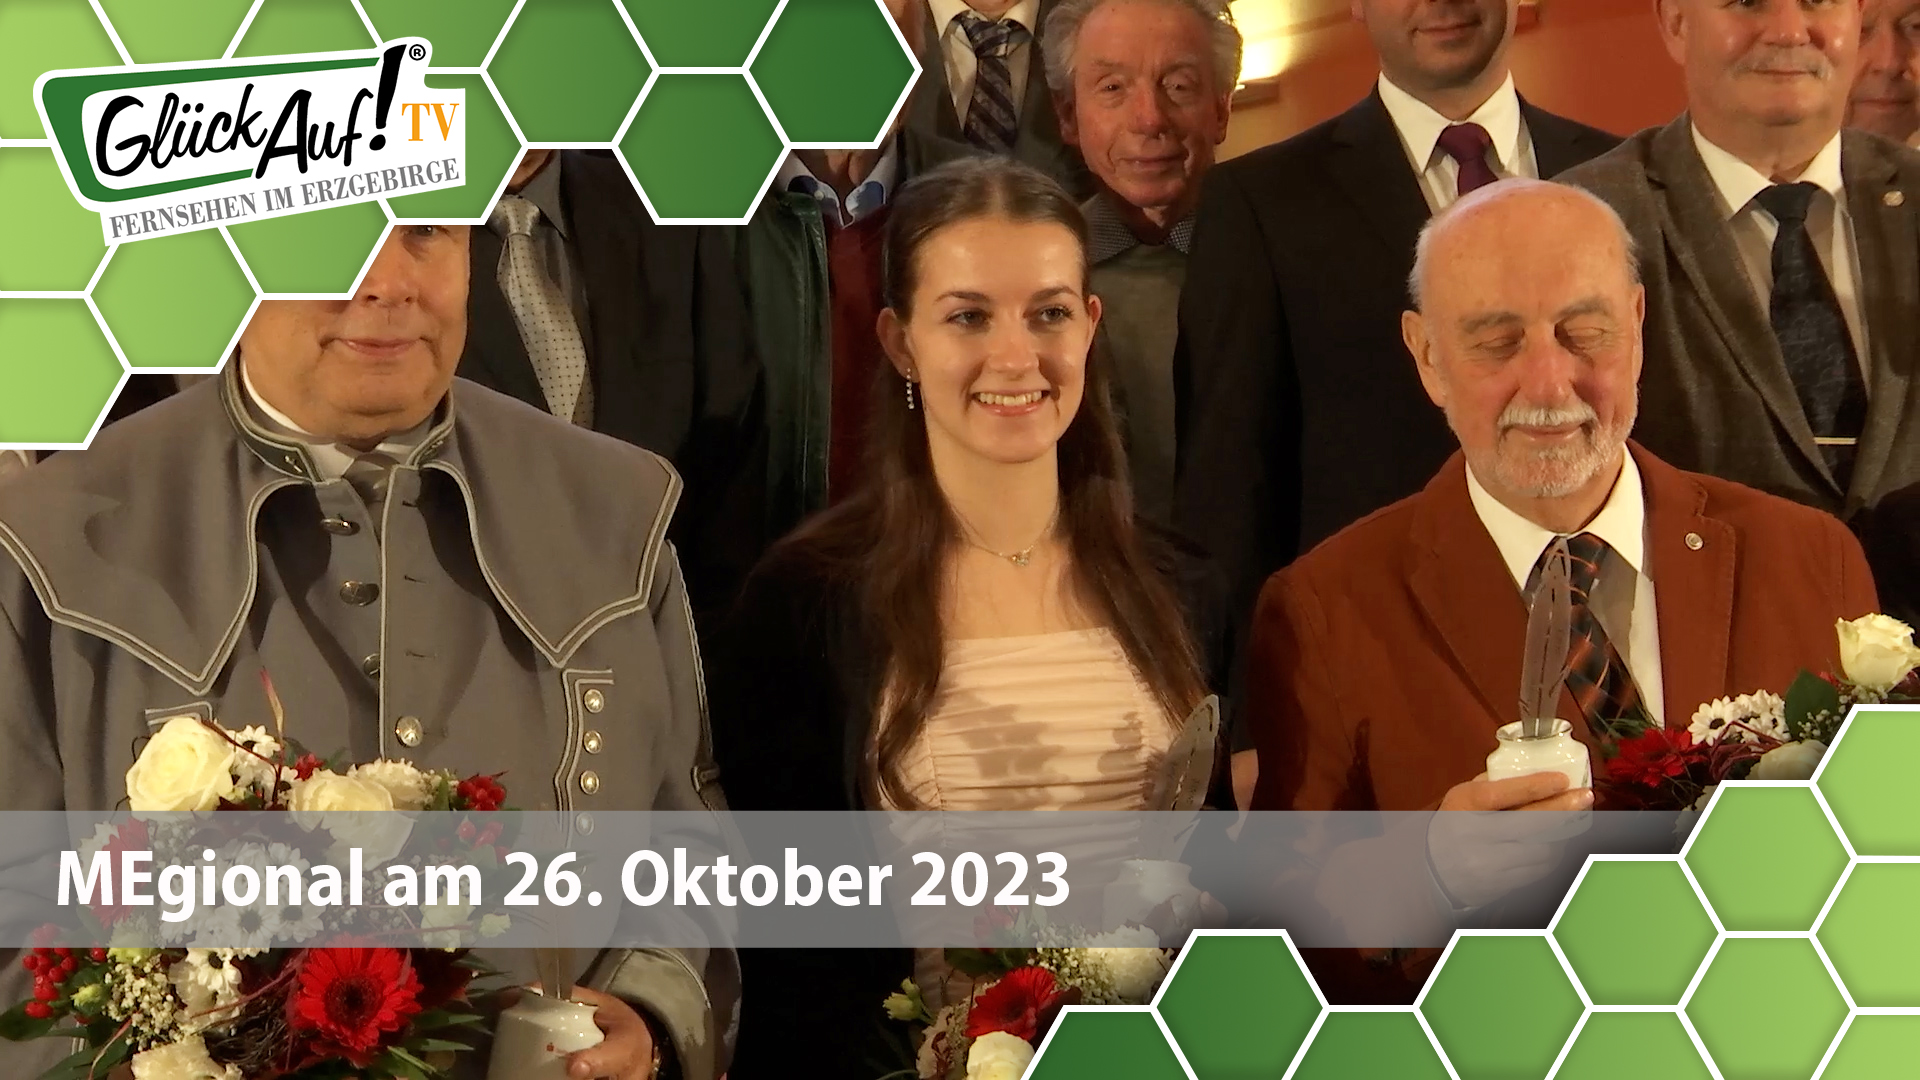 MEgional am 26. Oktober 2023 mit dem Andreas Möller Geschichtspreis